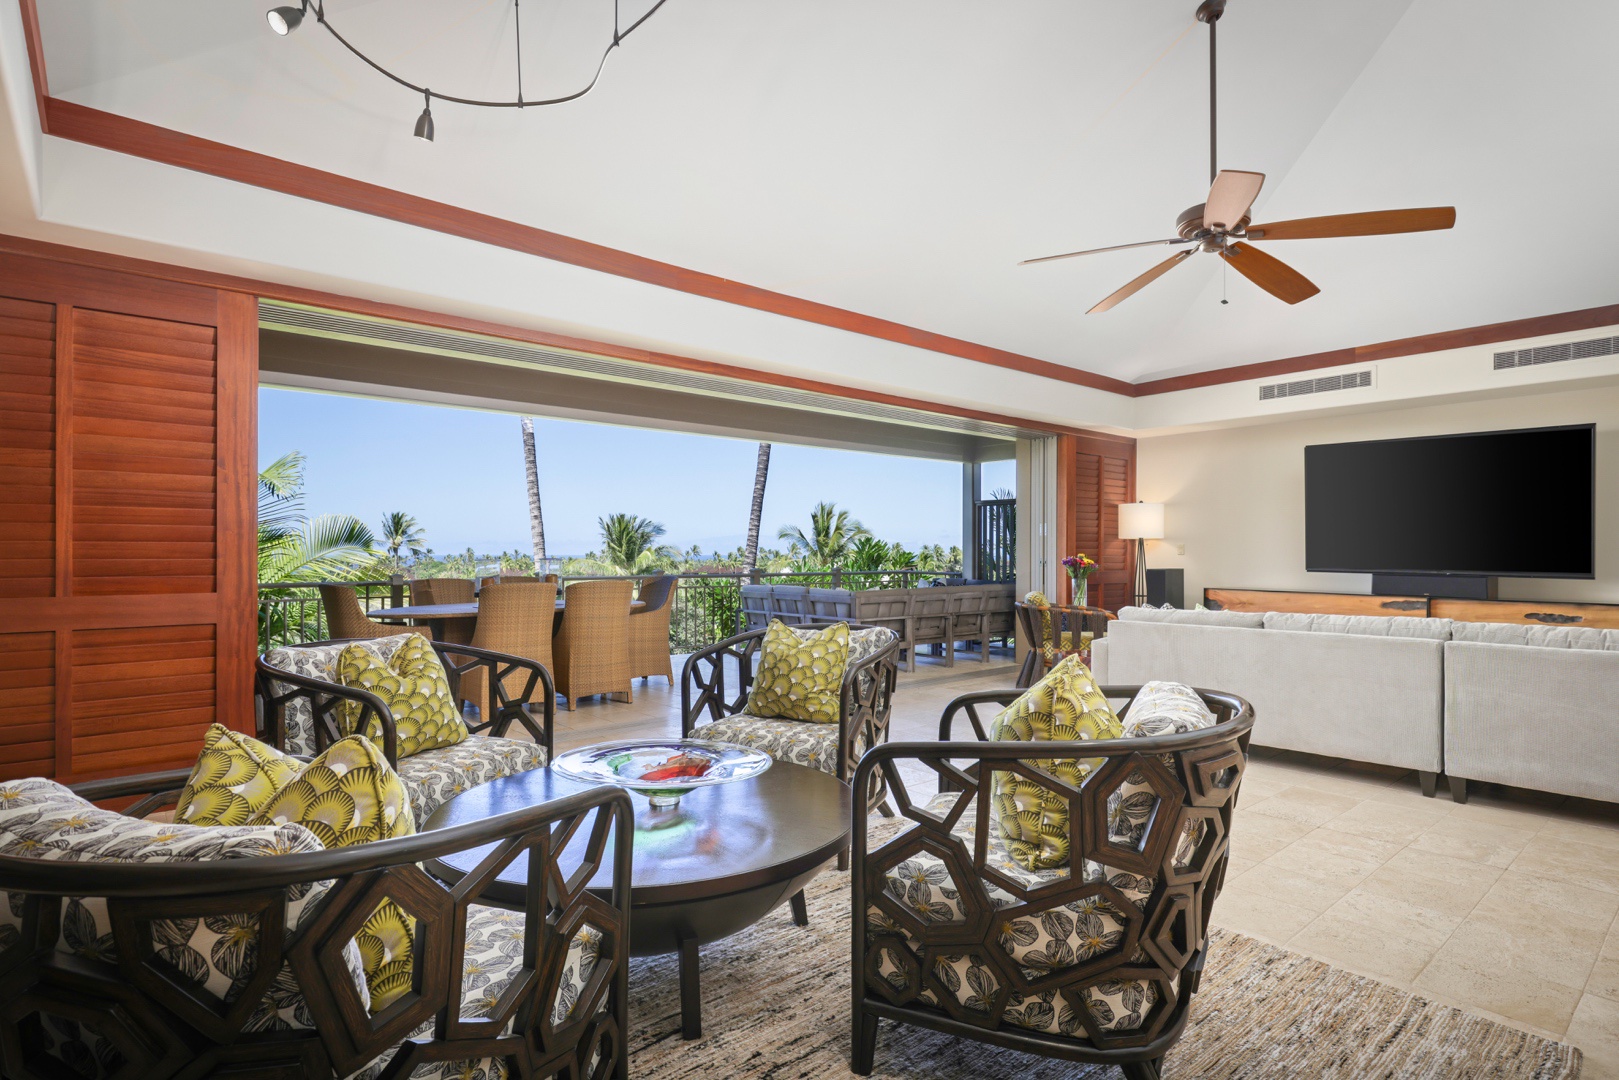 Kailua Kona Vacation Rentals, 3BD Ke Alaula Villa (210B) at Four Seasons Resort at Hualalai - Elegant interior club chair seating & dining area with view to upper deck.